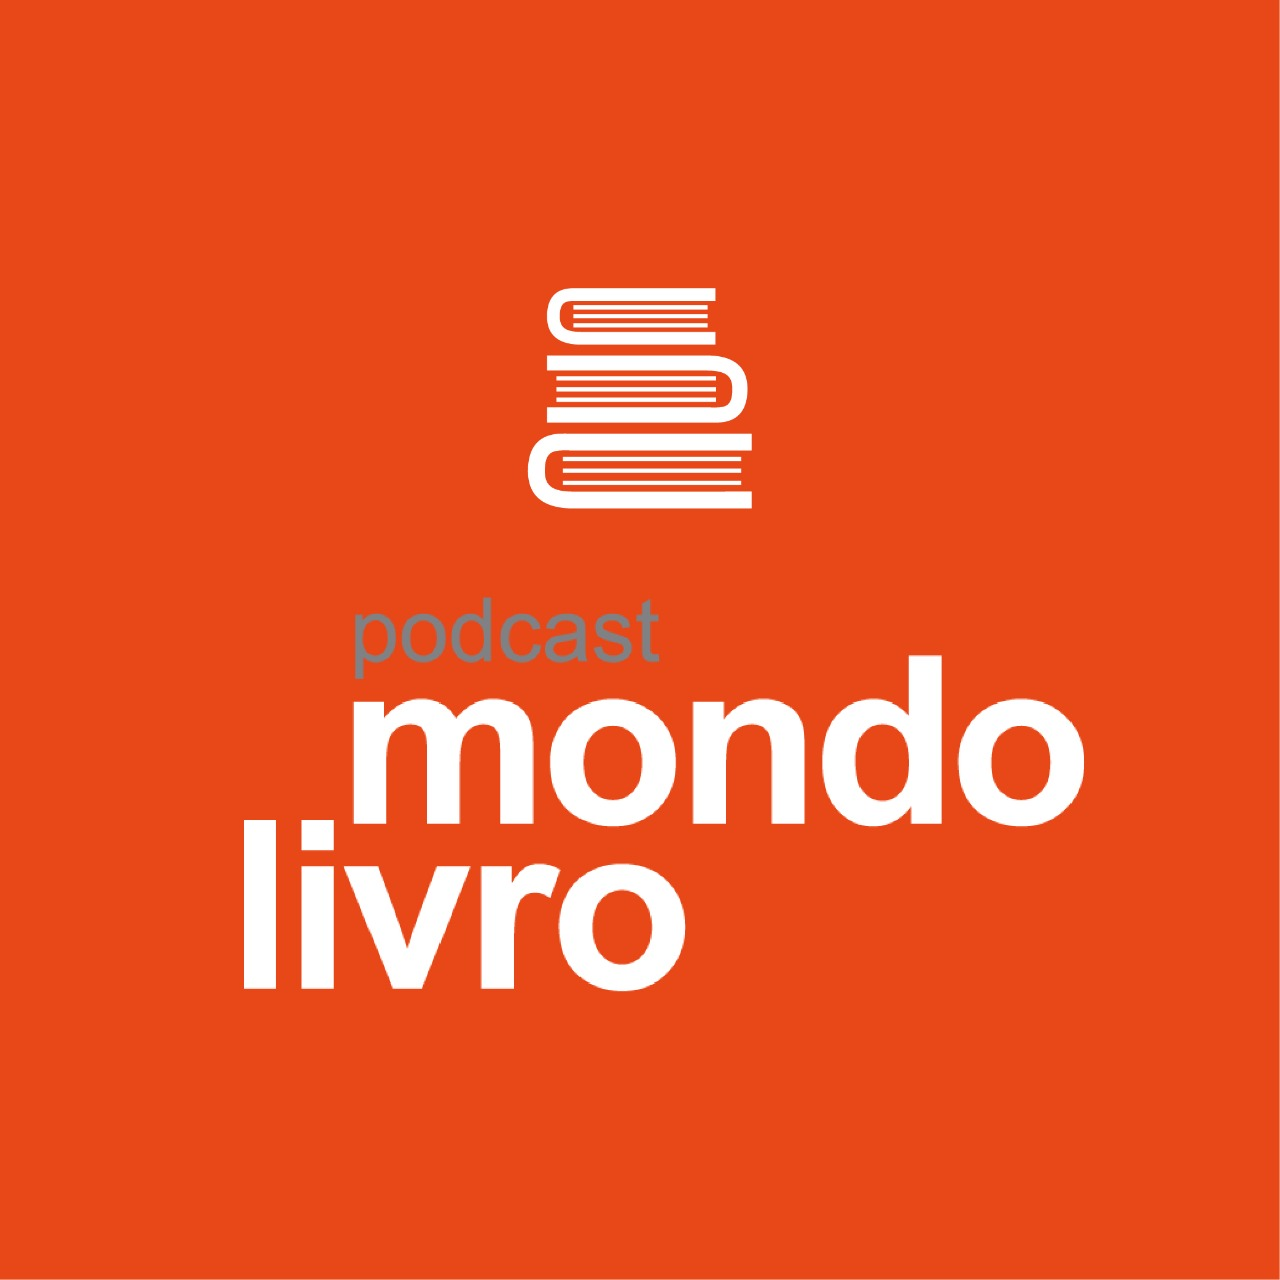 Mondolivro Podcast - Para relembrar - Um podcast com Luis Fernando Verissimo gravado em 2016